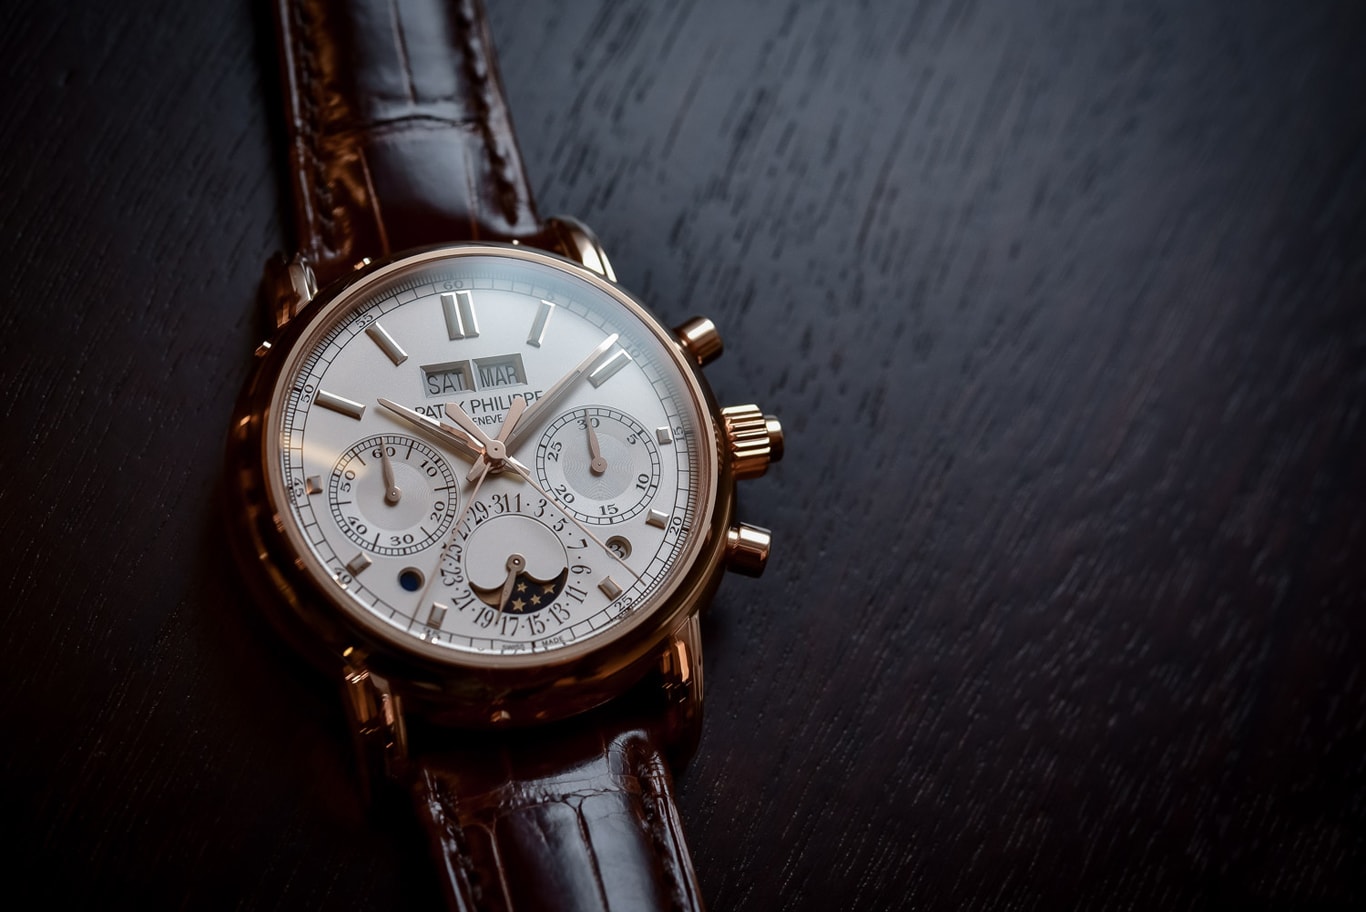 Tổng hợp: Dòng sự kiện những chiếc đồng hồ Patek Philippe với chức năng phức tạp - Lịch vạn niên kết hợp Chronograph (Phần 4)